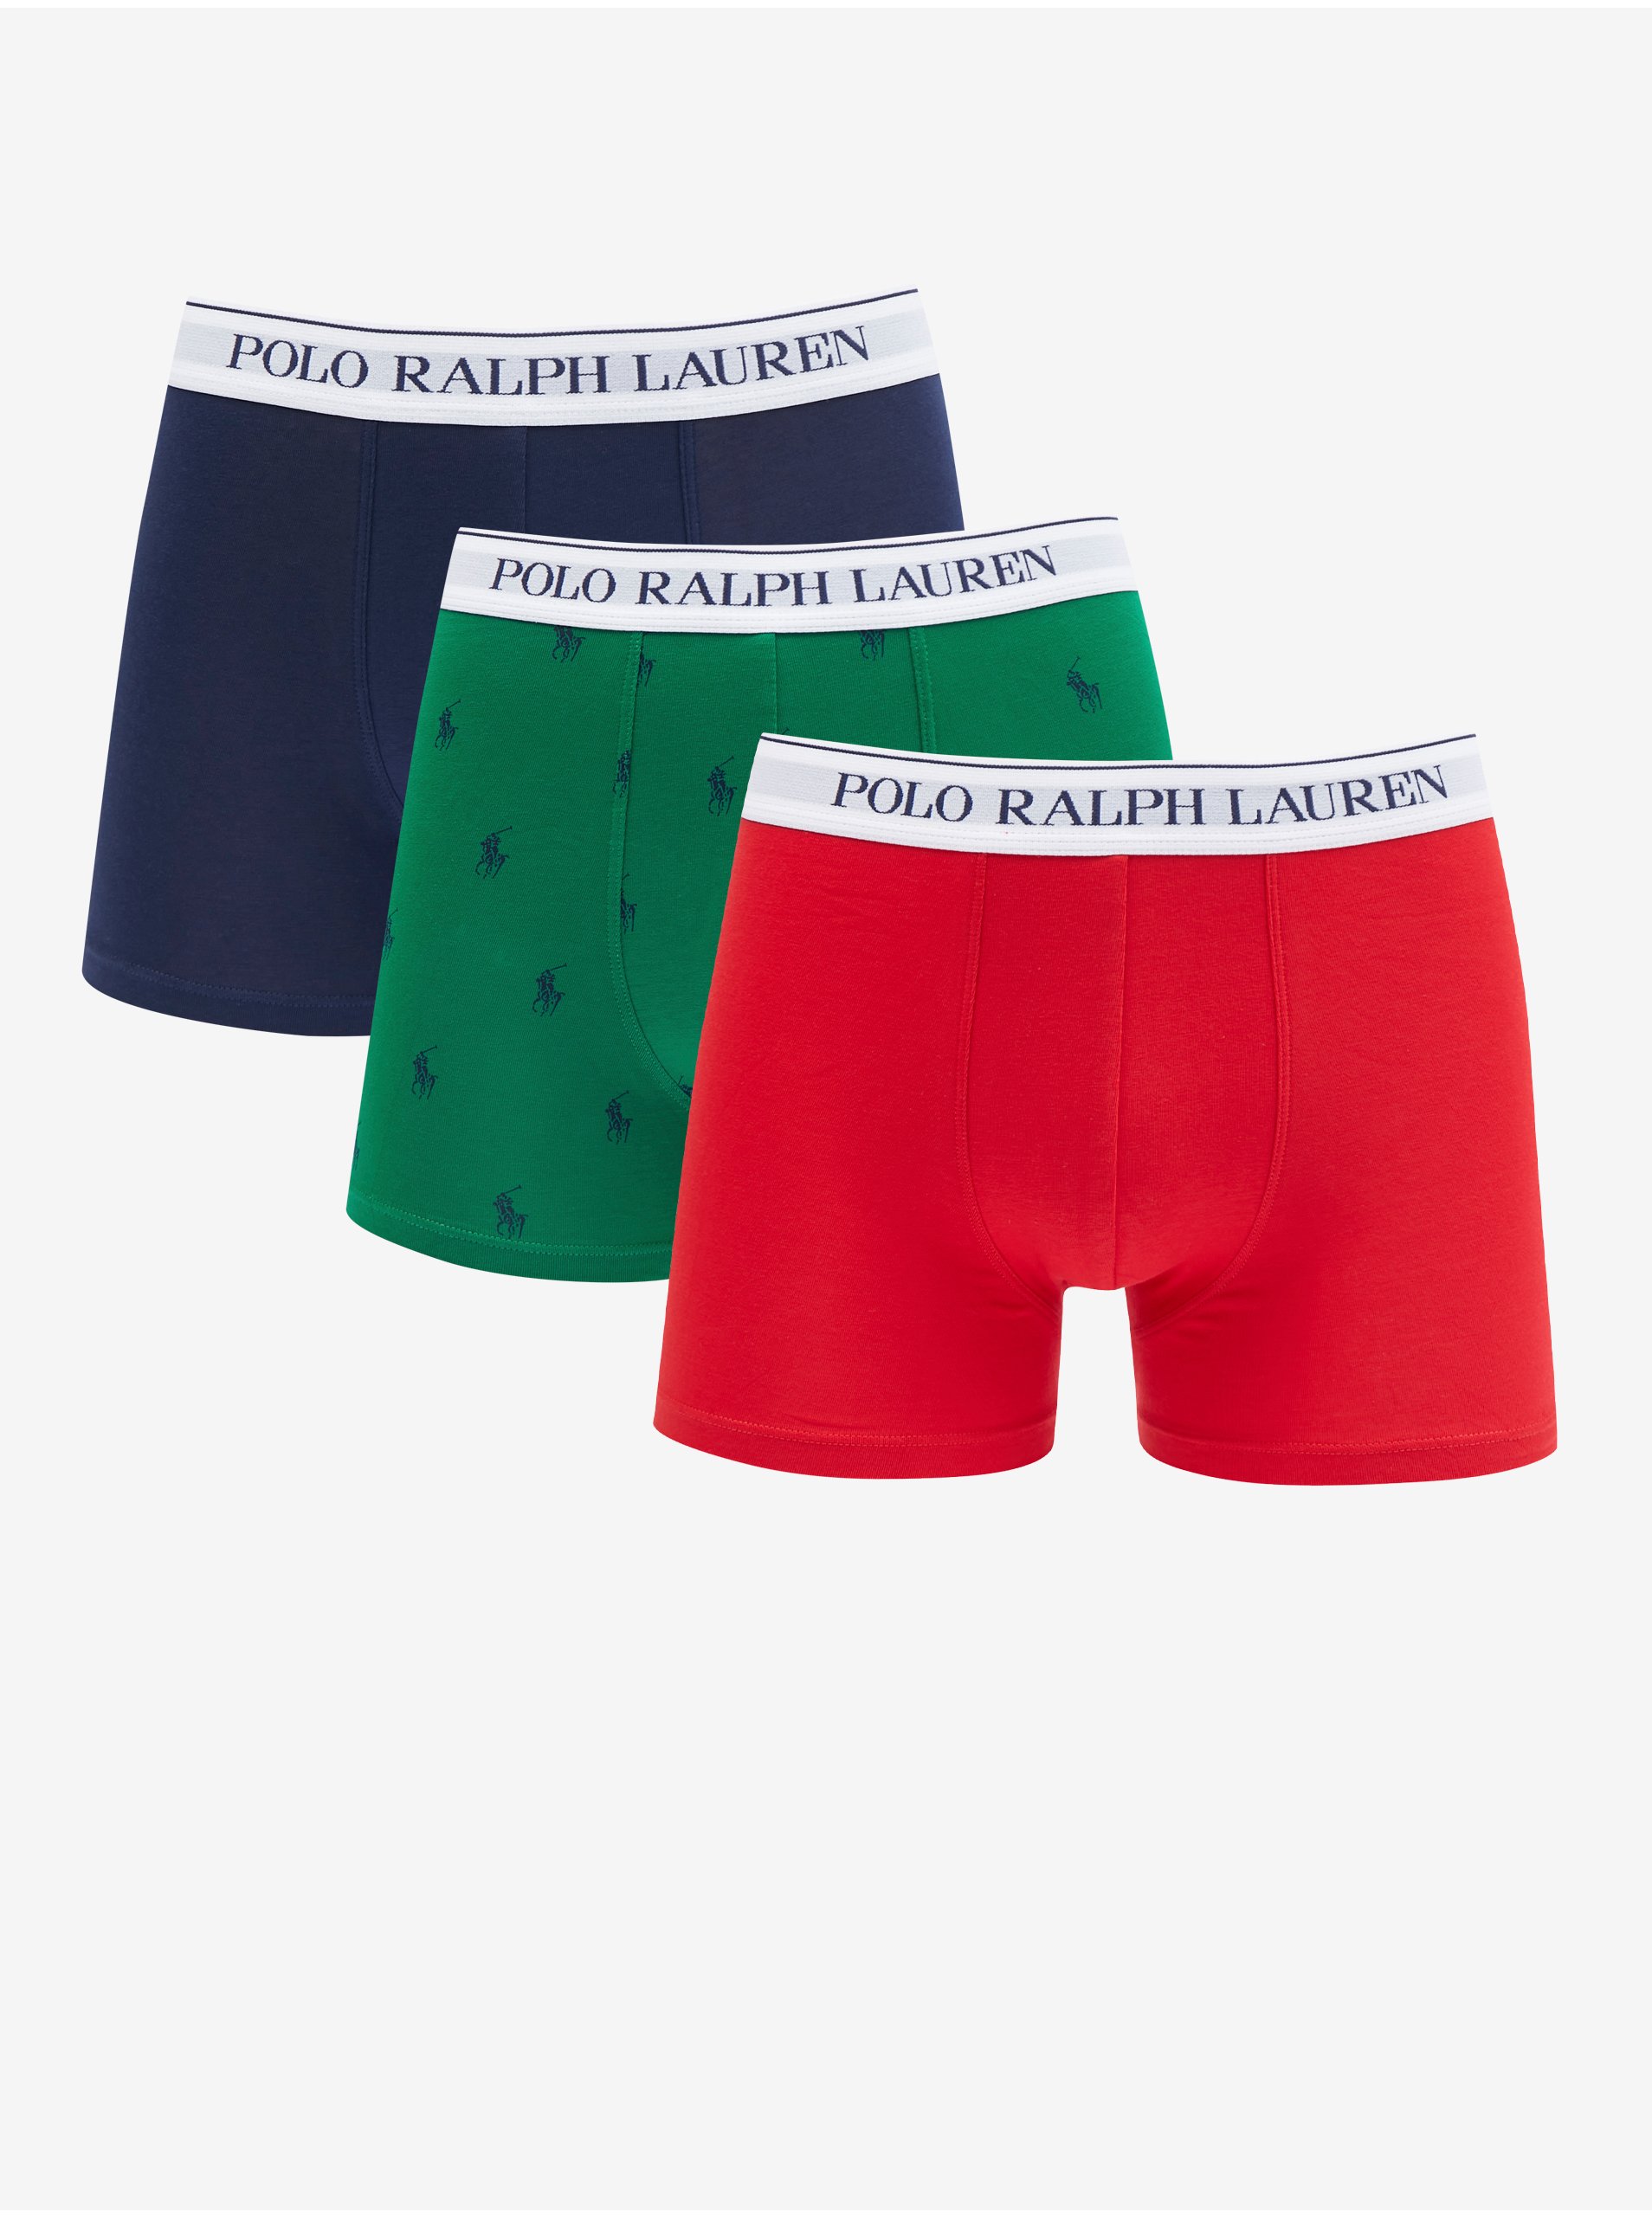 Lacno Súprava troch pánskych boxeriek v červenej, zelenej a tmavo modrej farbe Ralph Lauren